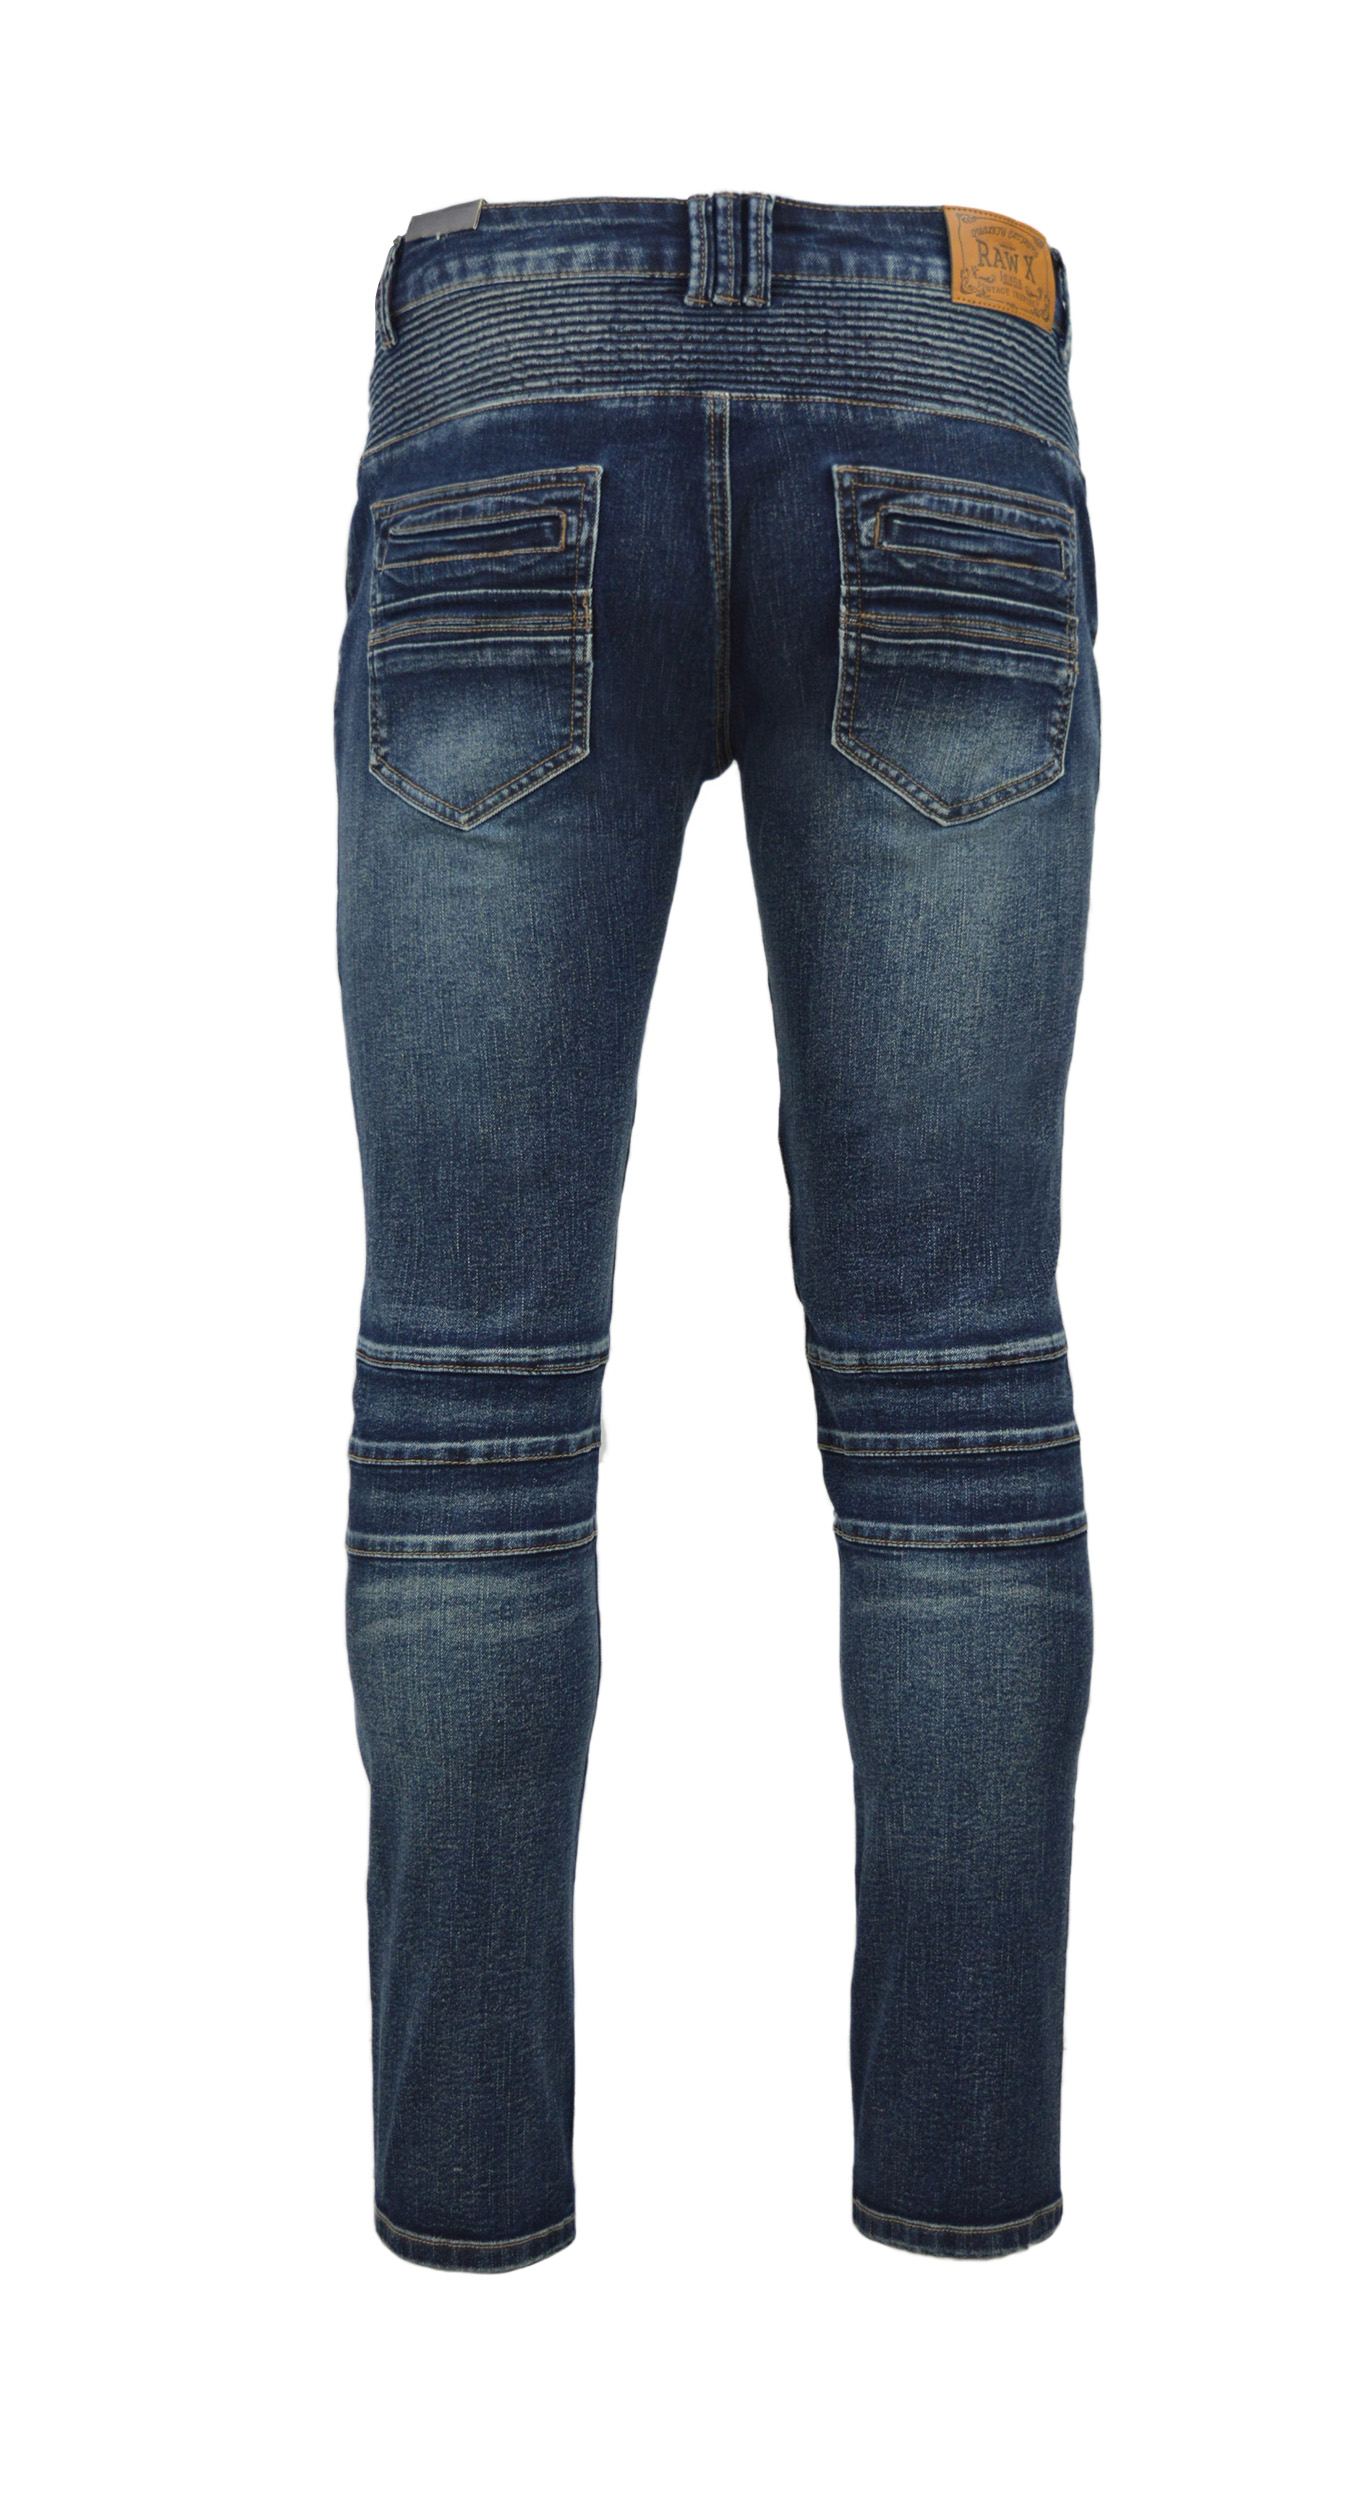 RAW X Men's Slim Fit Skinny Biker Jean, Comfy Flex Stretch Moto Wash Rip Distressed Denim Jeans Pants - image 3 of 5